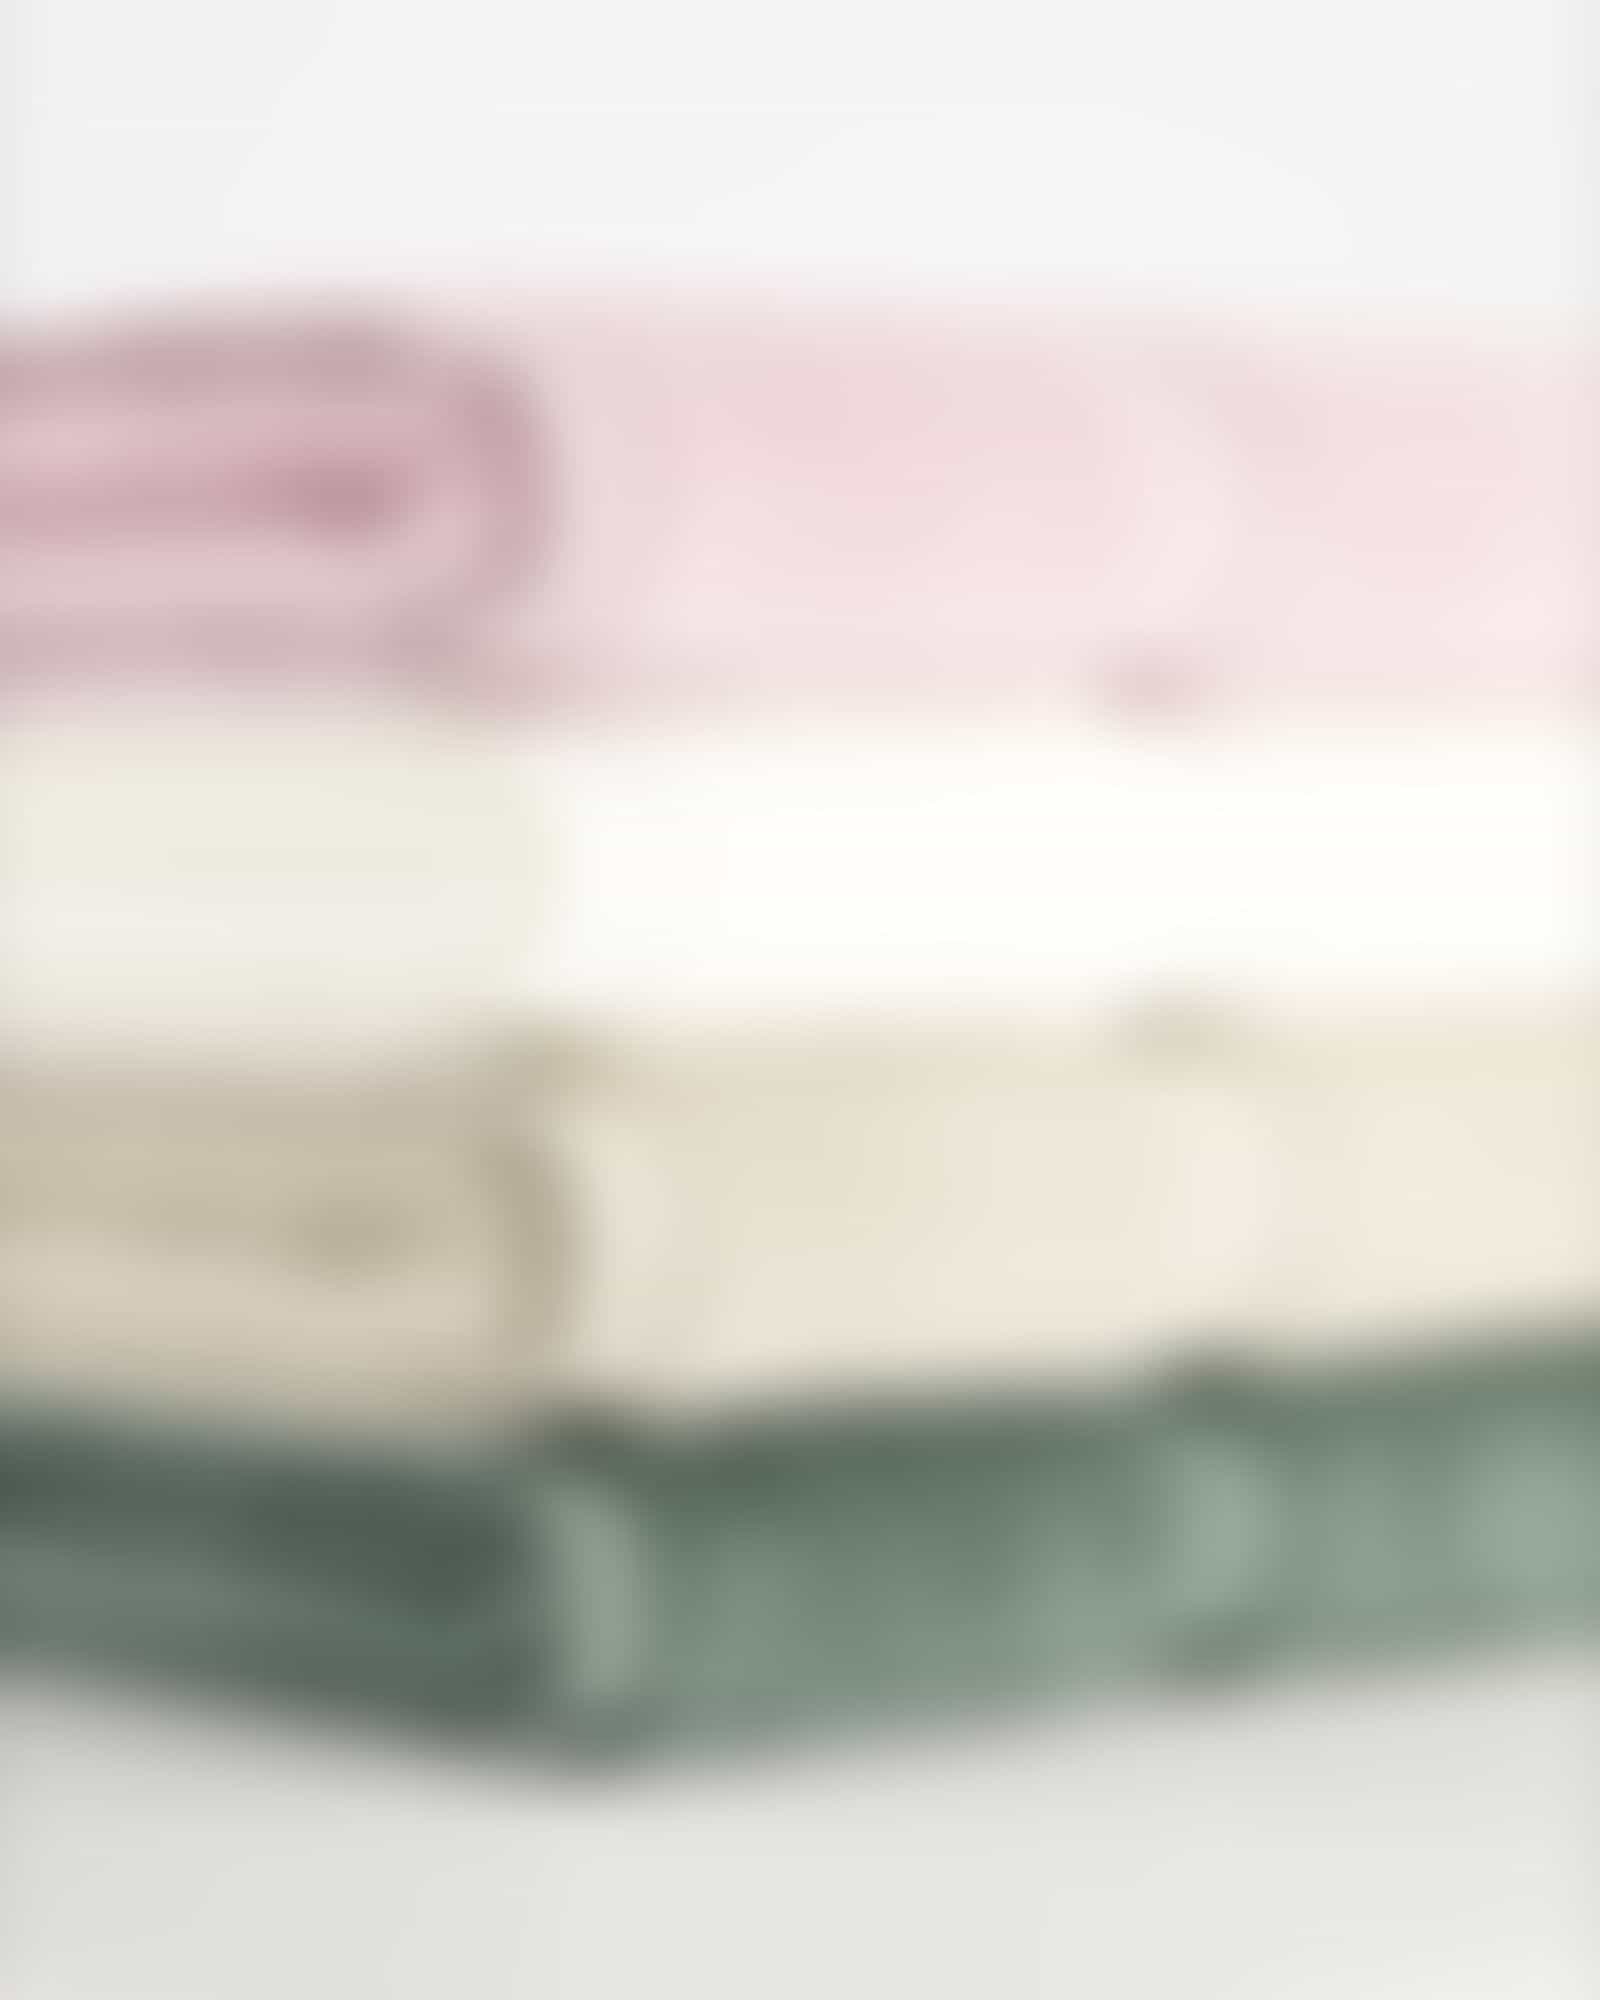 Vossen Handtücher Belief - Farbe: sea lavender - 3270 - Badetuch 100x150 cm